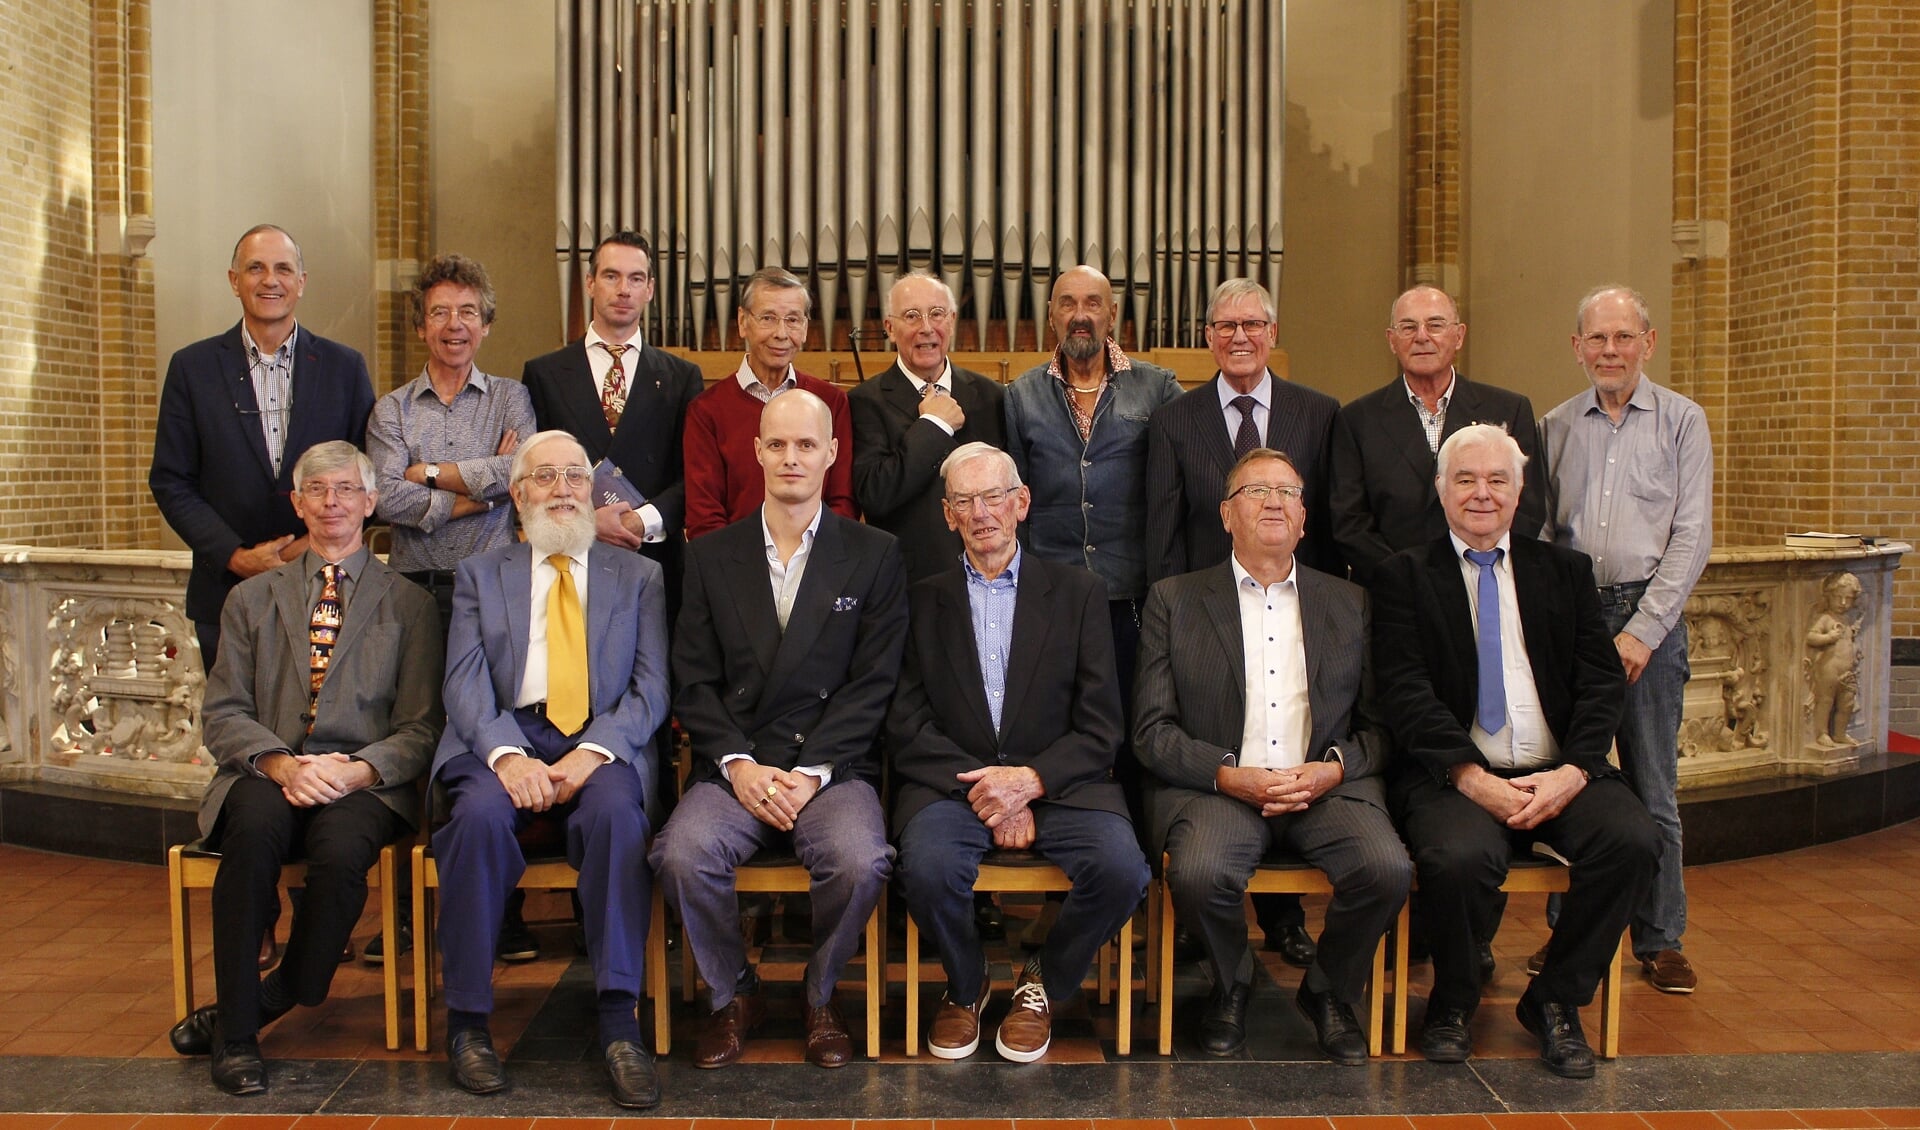 Het bijna complete koor, aangevuld met enkele enthousiaste zangers, waaronder diverse oud-leden.